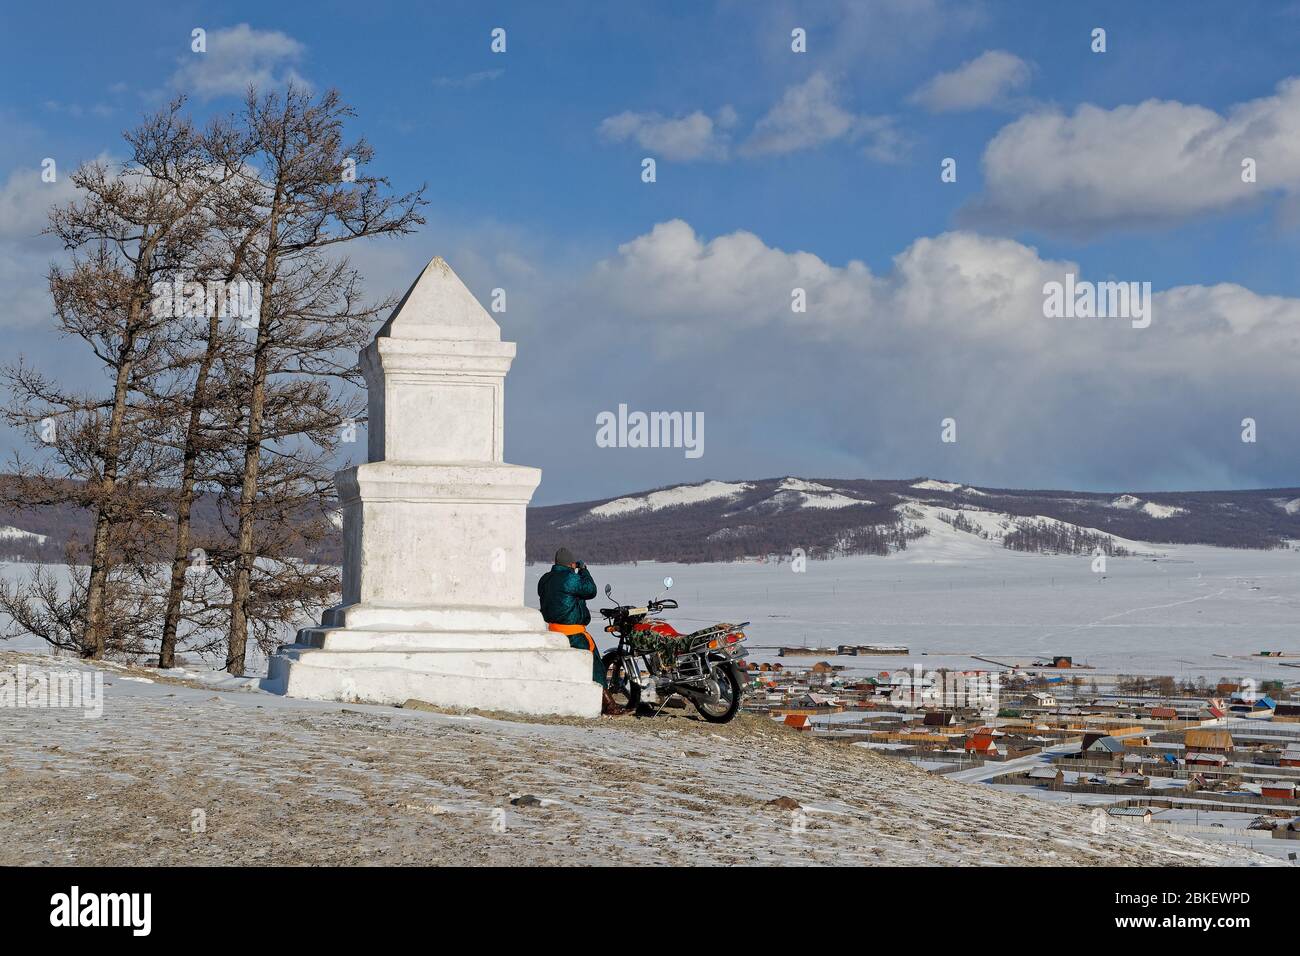 KHATGAL, MONGOLIA, 26 febbraio 2020 : UN uomo in bicicletta guarda la città dalla cima di una collina, vicino ad una colonna bianca. Foto Stock